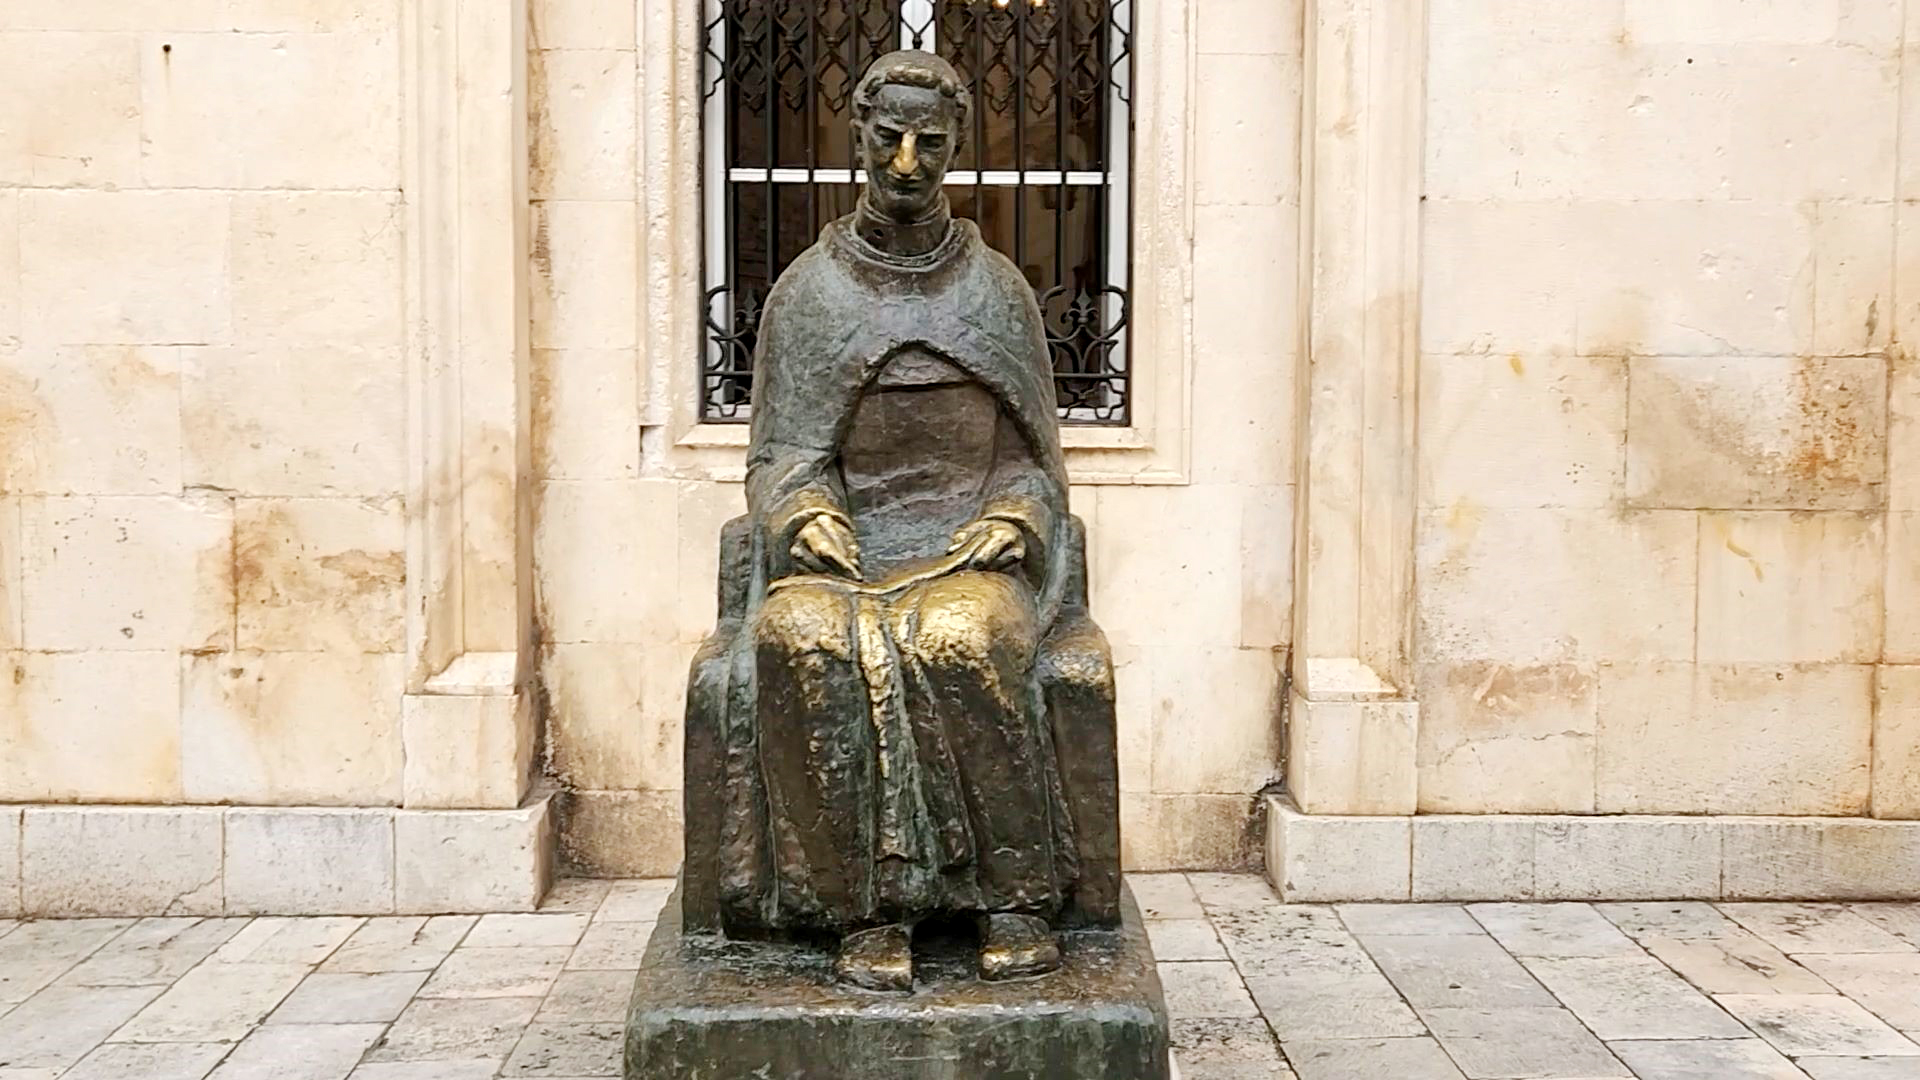 두브로브니크는 많은 시인과 작가를 배출한 도시로도 유명하다. 구시가지에는 두브로브니크 출신 작가 ‘마린 드리지치(Marin Drzic, 1508~1567)’의 동상이 있다. 이 동상의 코를 만지면 행운이 찾아오고, 손을 만지면 글재주가 생긴다는 미신 때문에 유독 코와 손 부분이 바래져 있다. 